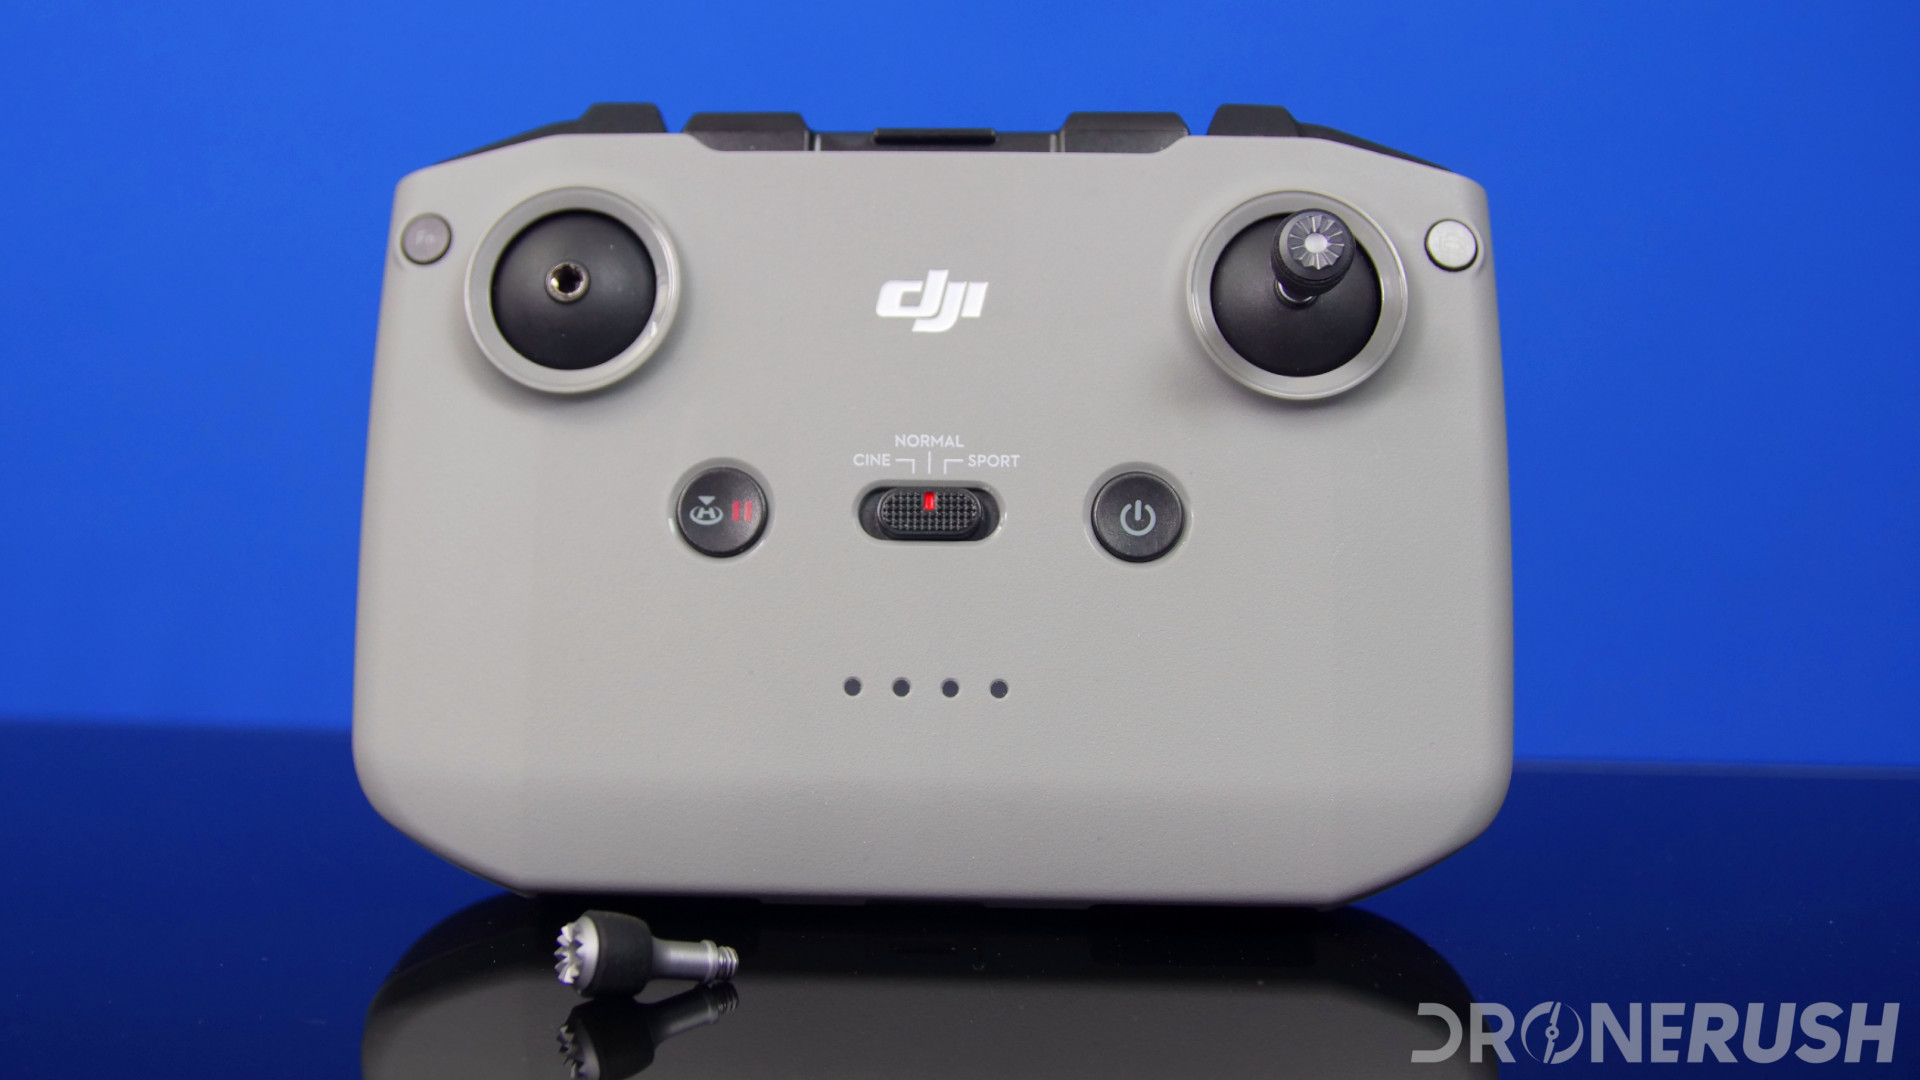 DJI Mini 2 - Drone Rush